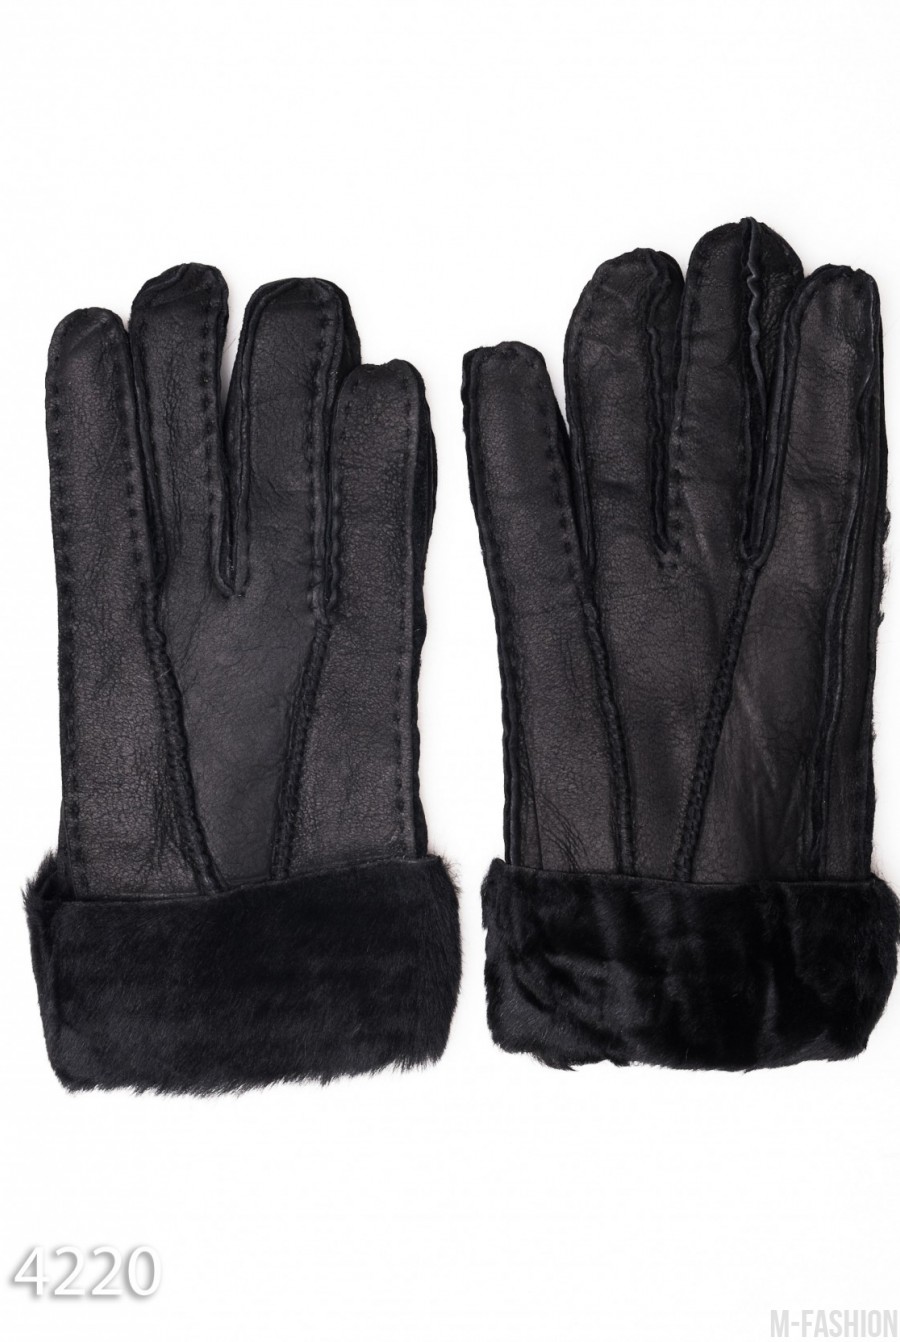 Черные грубые кожаные рукавицы с меховыми манжетами - Фото 1